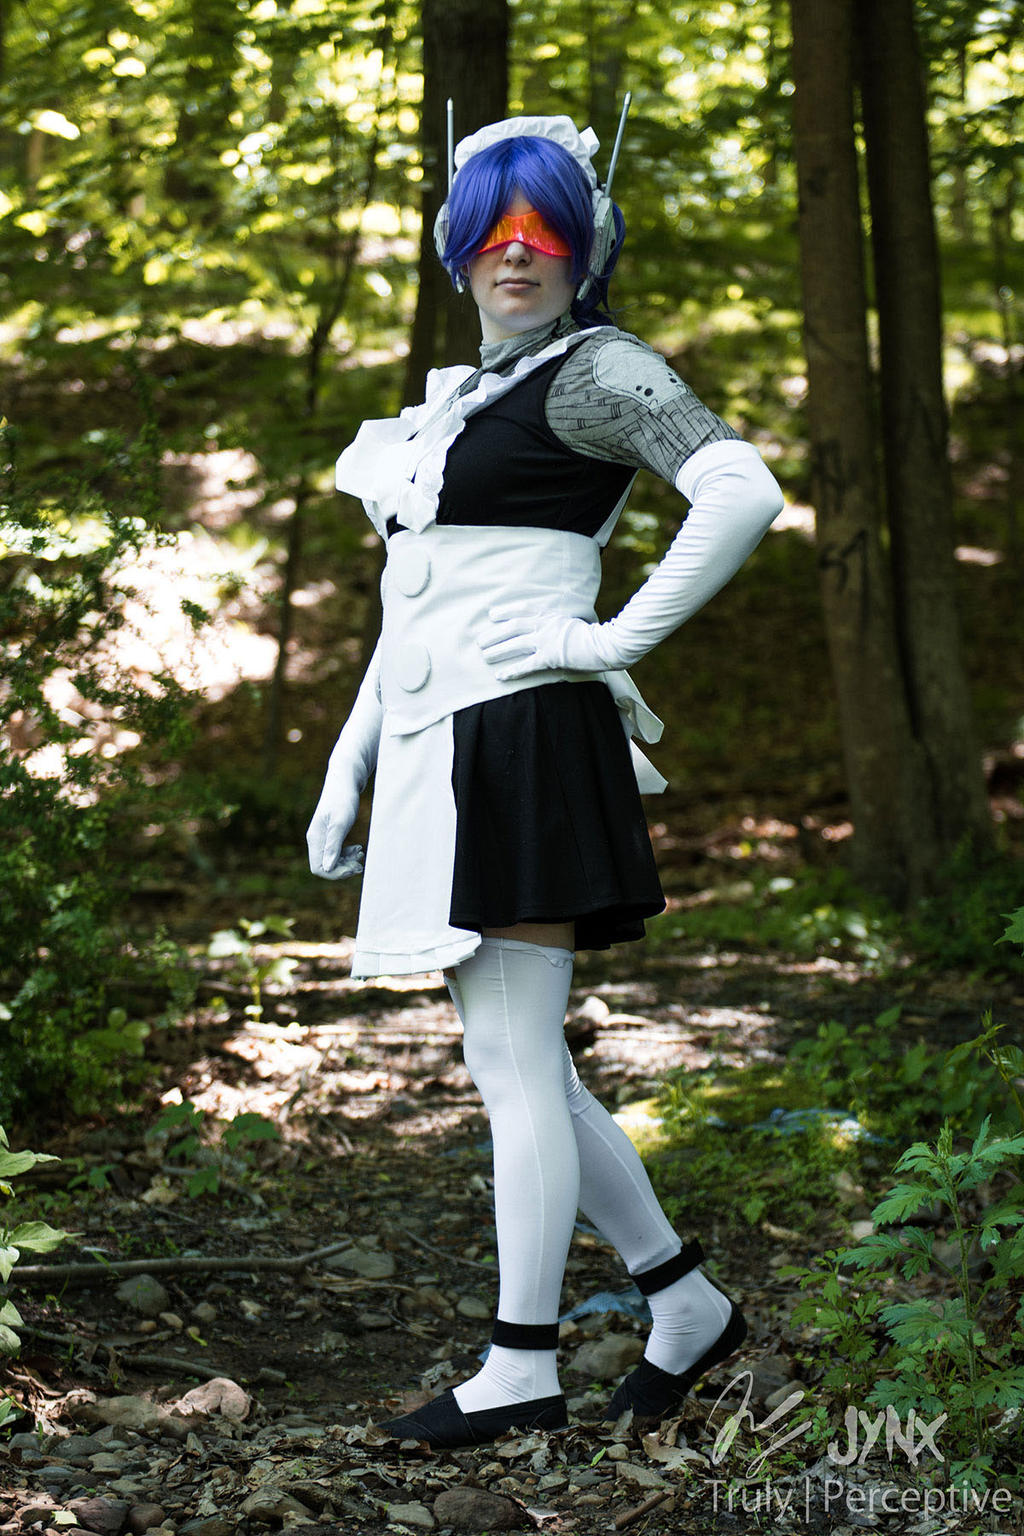 GITS SAC_2045 maid robot kigurumi cosplay by cocoa-box on DeviantArt